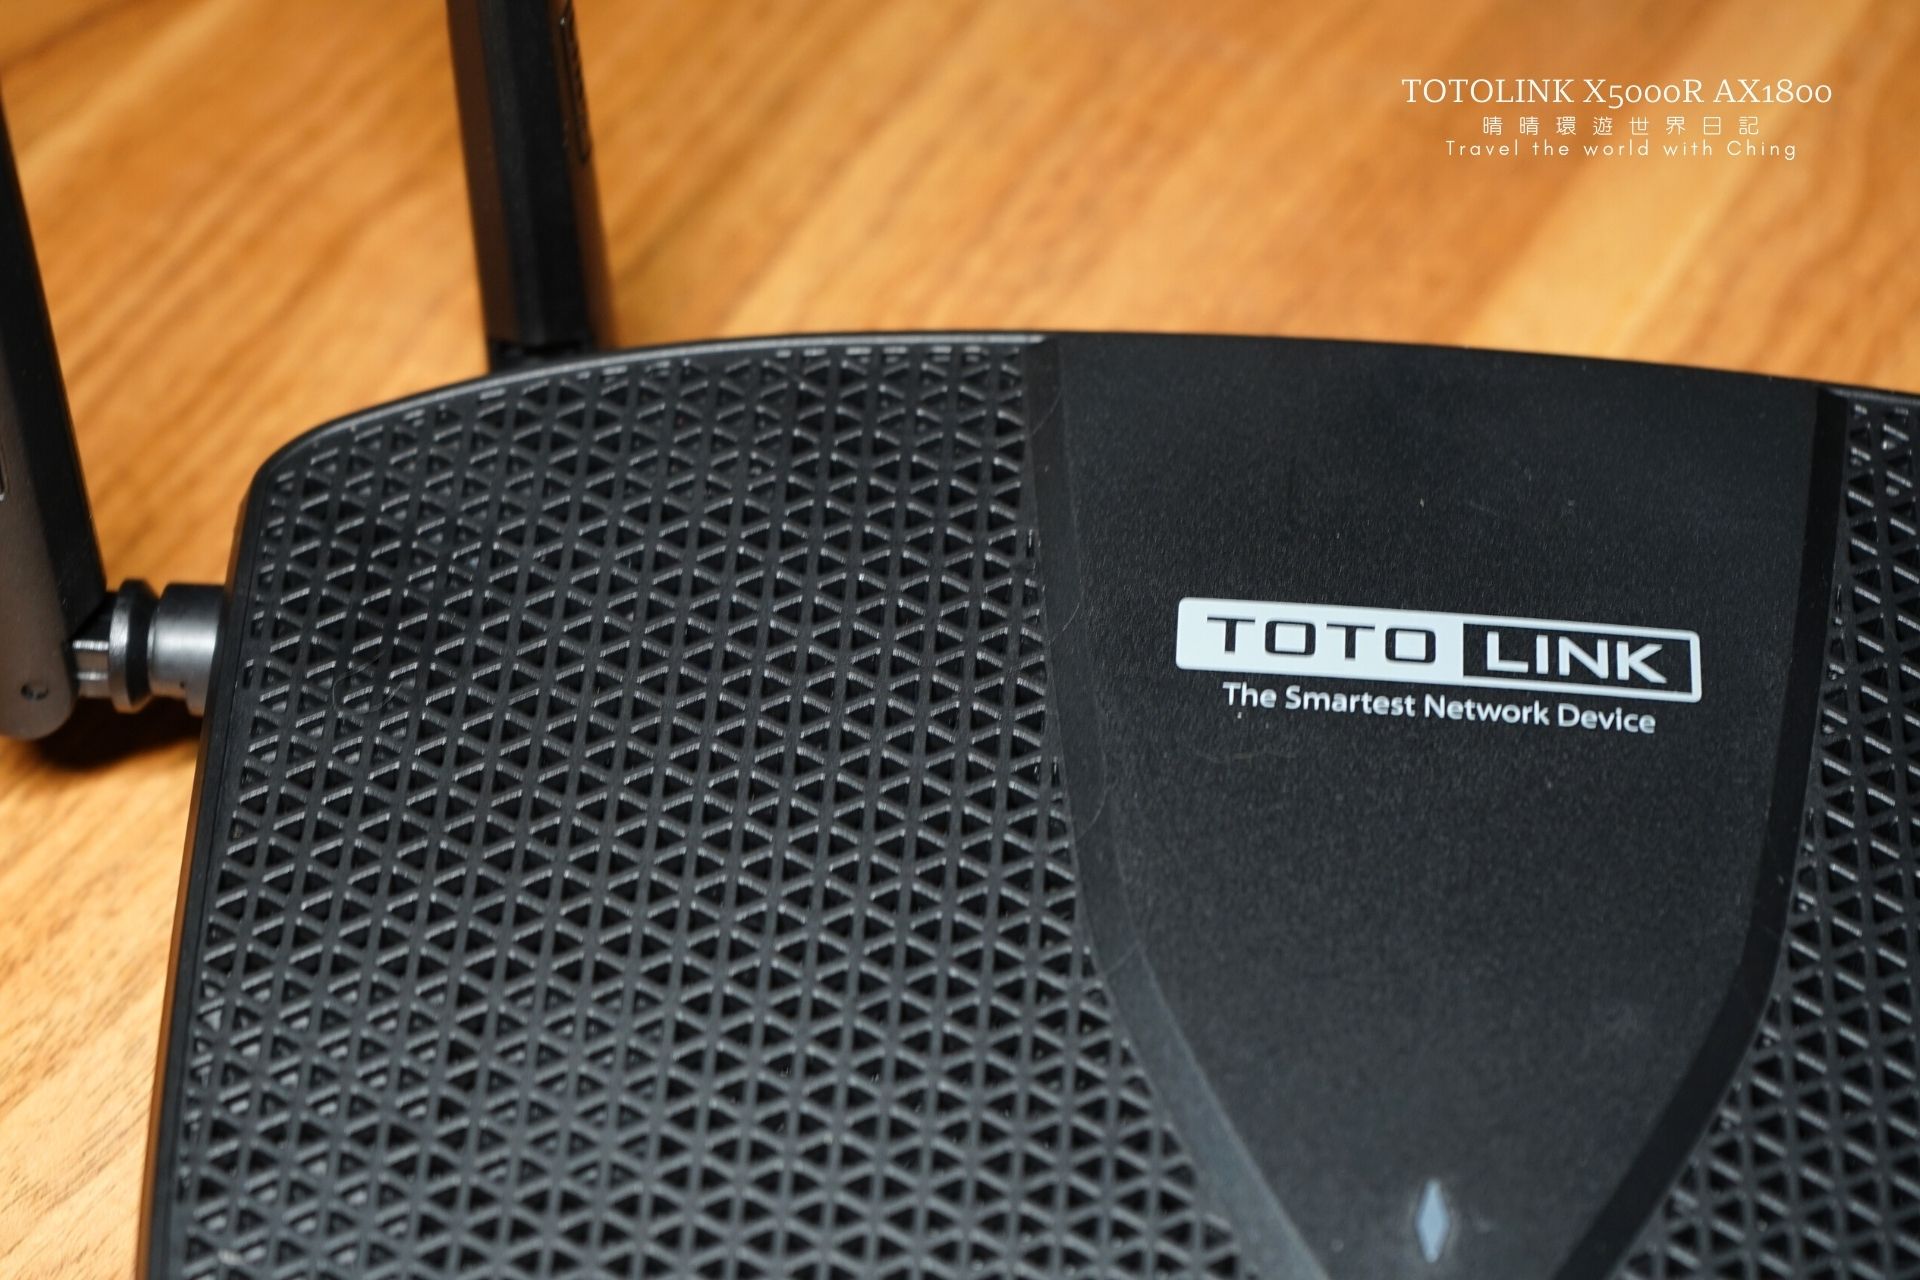 【3C開箱】TOTOLINK X5000R AX1800 WiFi 6 Giga無線WIFI路由器